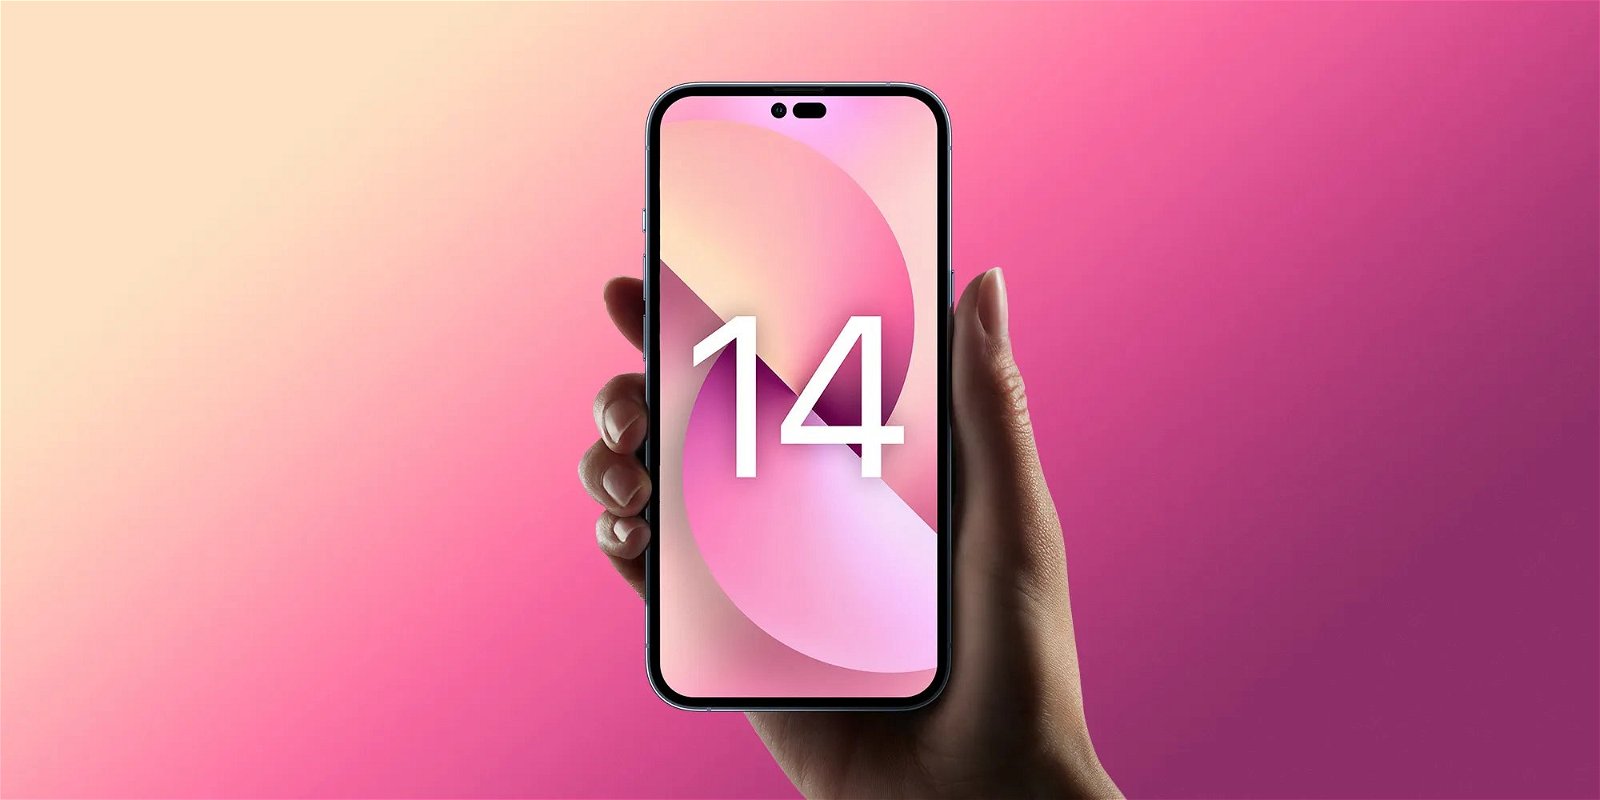 显示器行业分析师Ross Young声称，iPhone 14 Pro机型的显示屏上方有类似“感叹号”形状的打孔，分别置入Face ID点阵投影仪、自拍摄像头及Face ID红外摄像头。